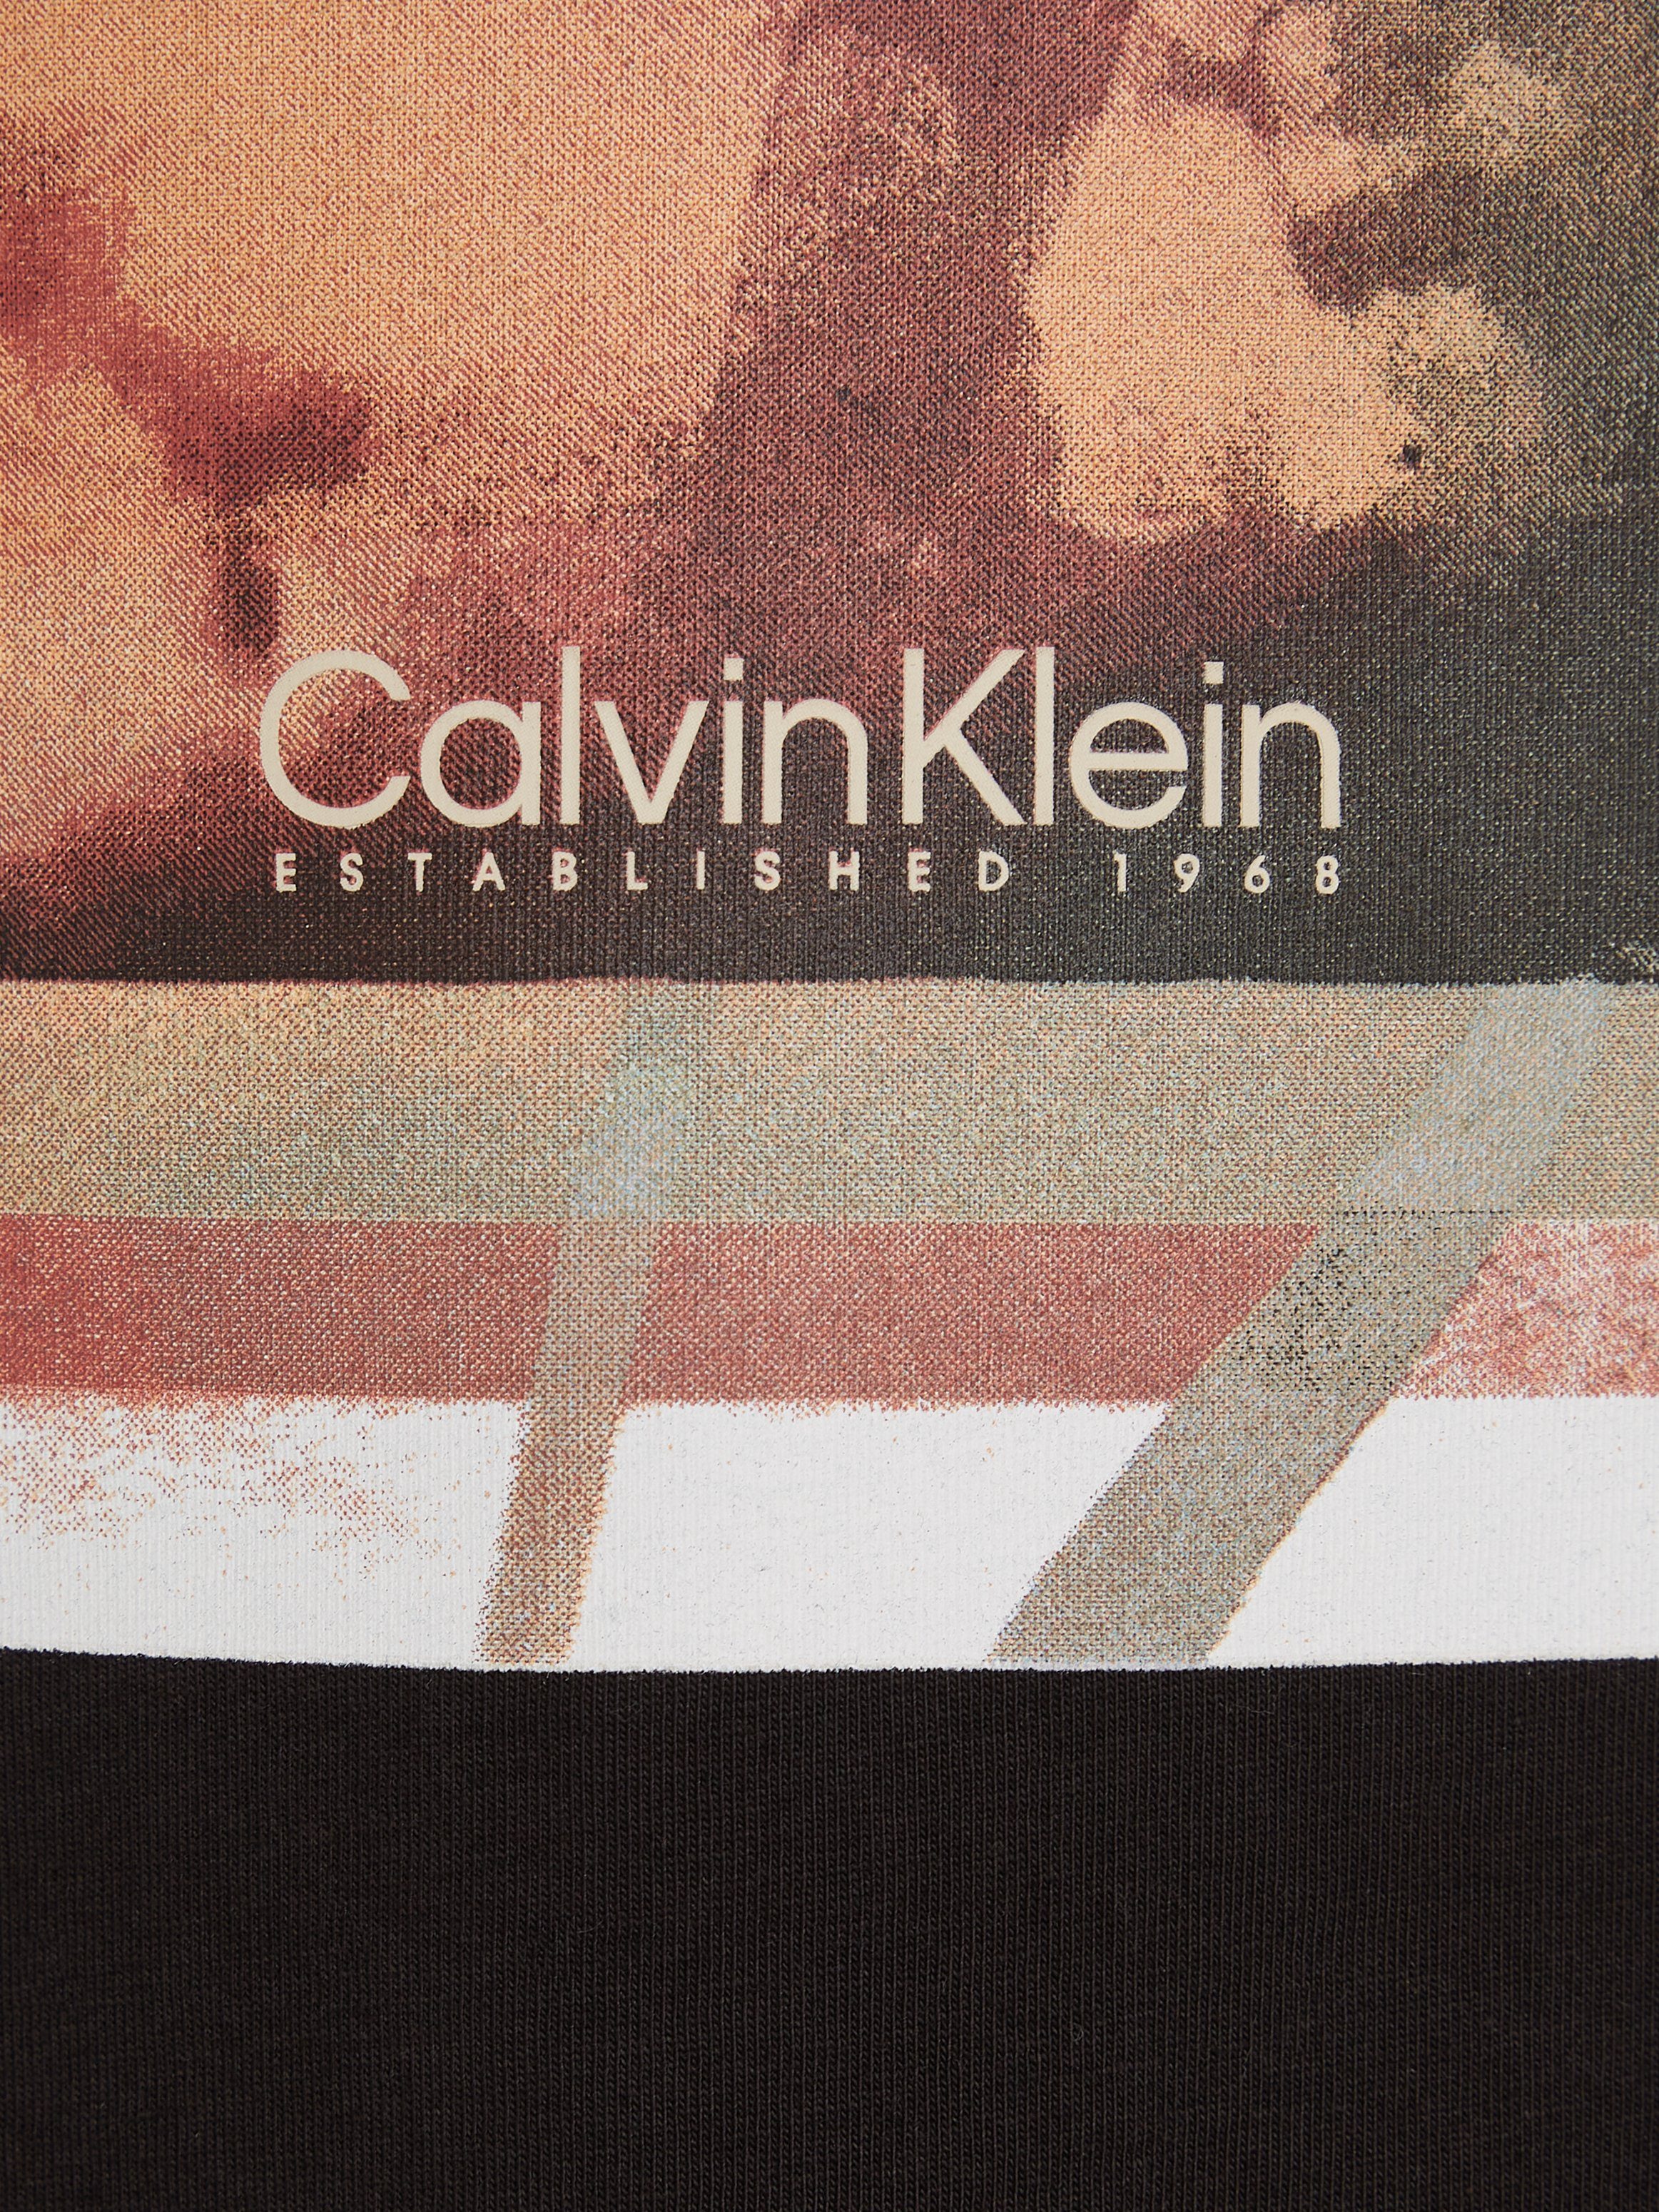 T-SHIRT T-Shirt Klein Calvin PRINT PHOTO